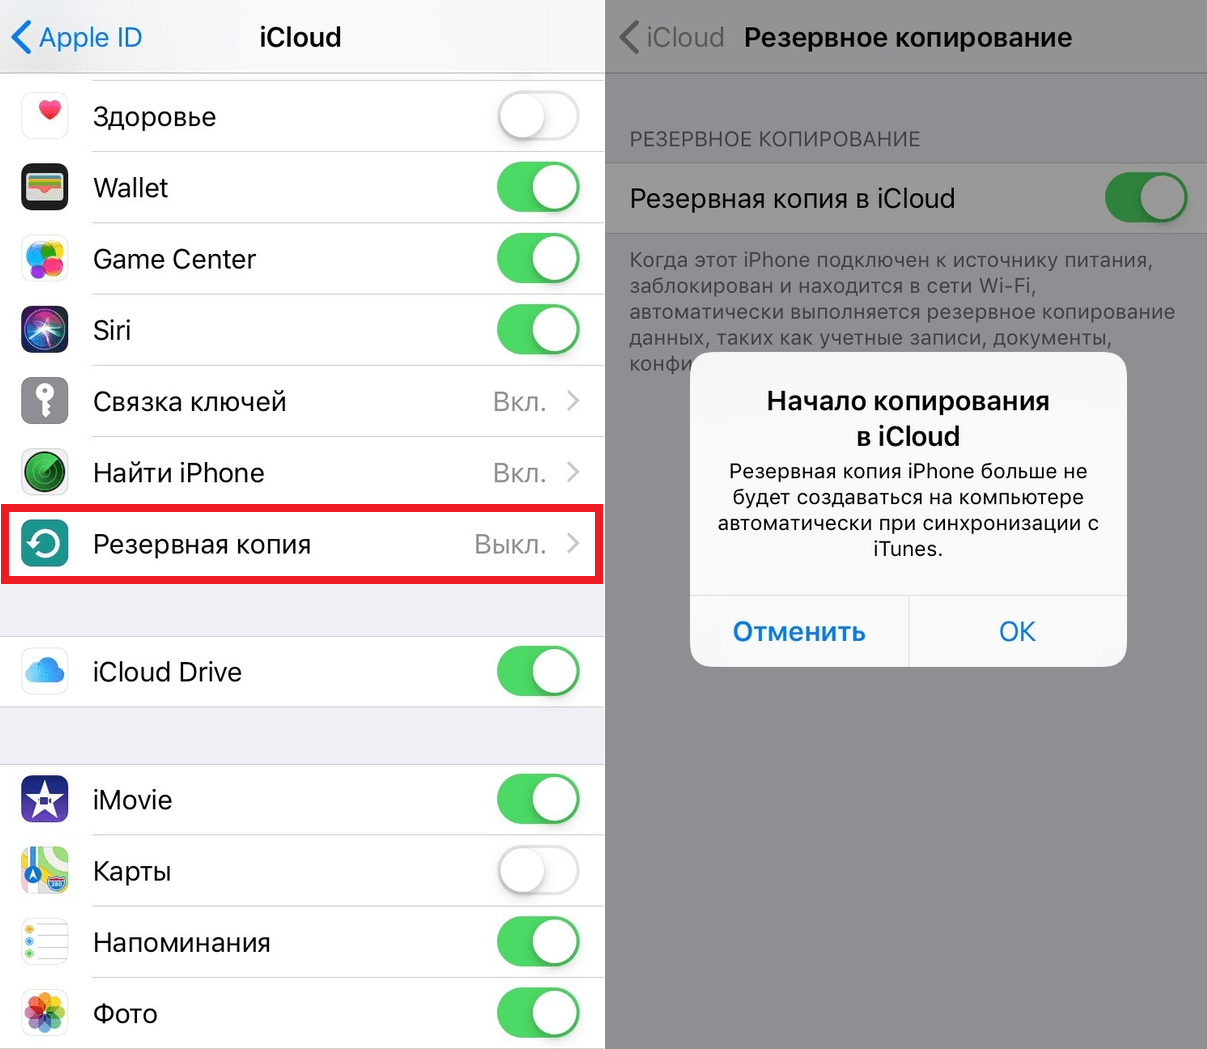 Как посмотреть или выгрузить фото из icloud в iphone, на компьютер или другое устройство